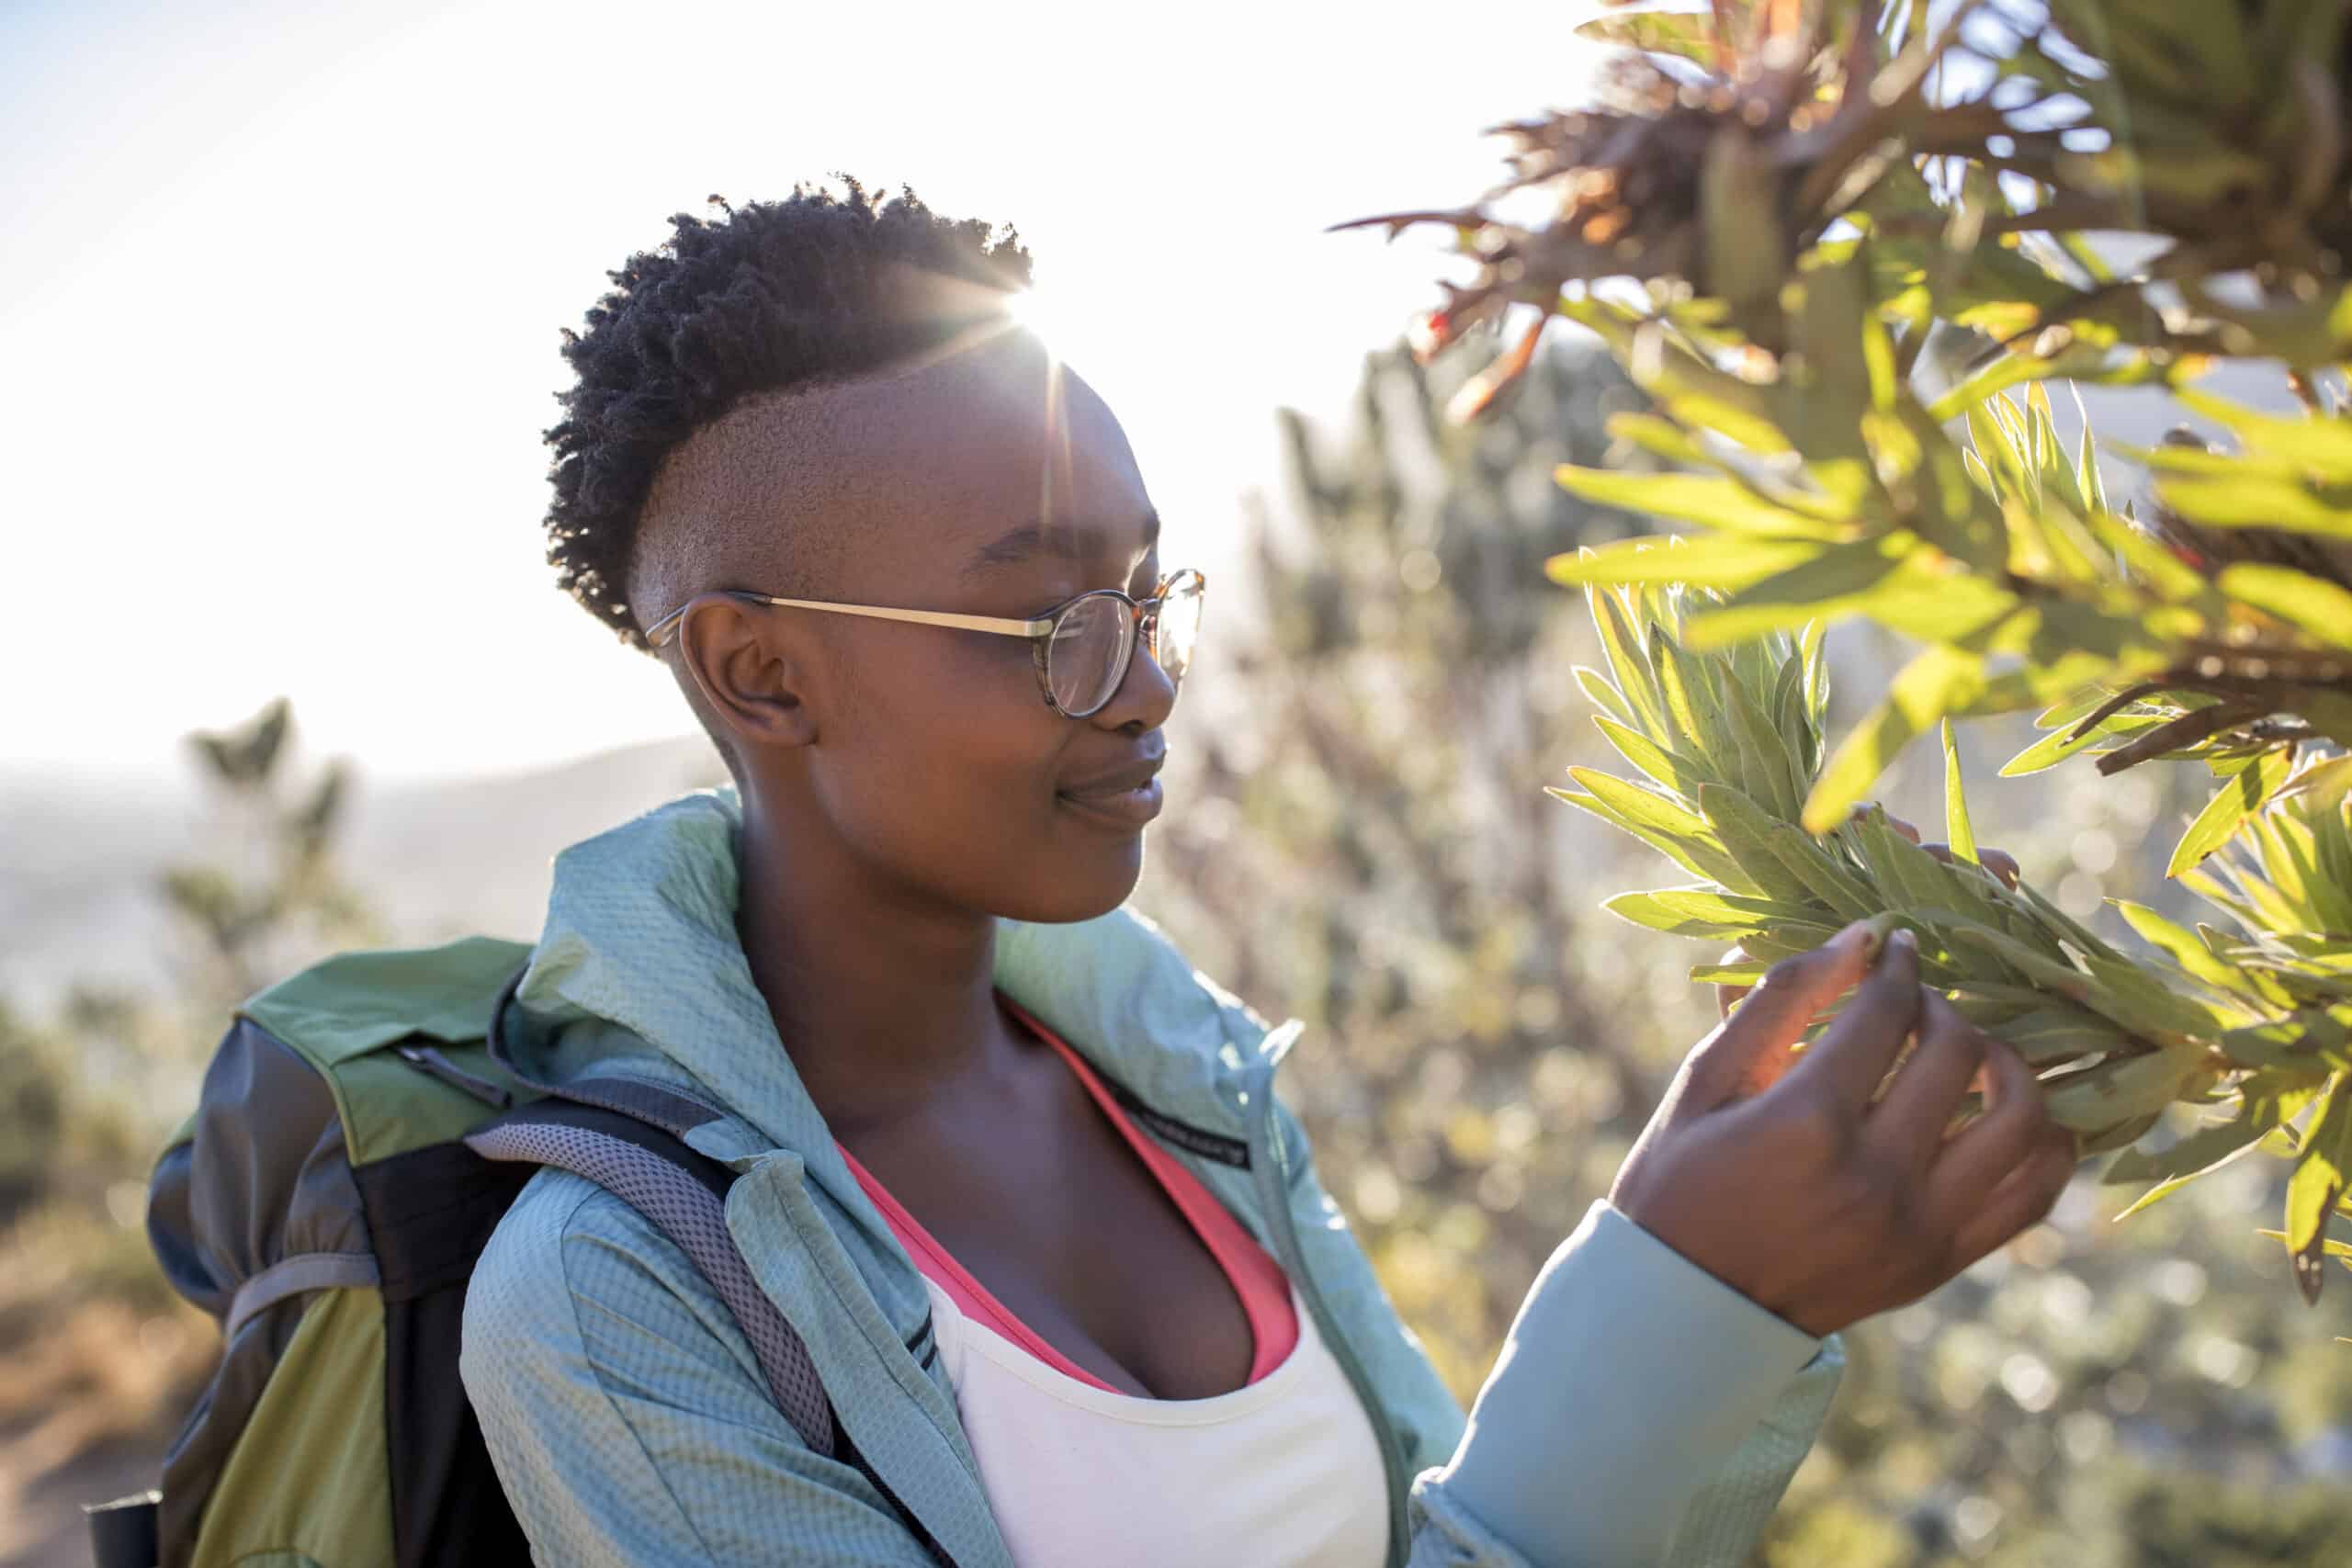 Eine junge Frau mit kurzen Haaren, Brille, Rucksack und lässiger Outdoor-Kleidung untersucht während einer sonnigen Wanderung neugierig eine grüne Pflanze. © Fotografie Tomas Rodriguez